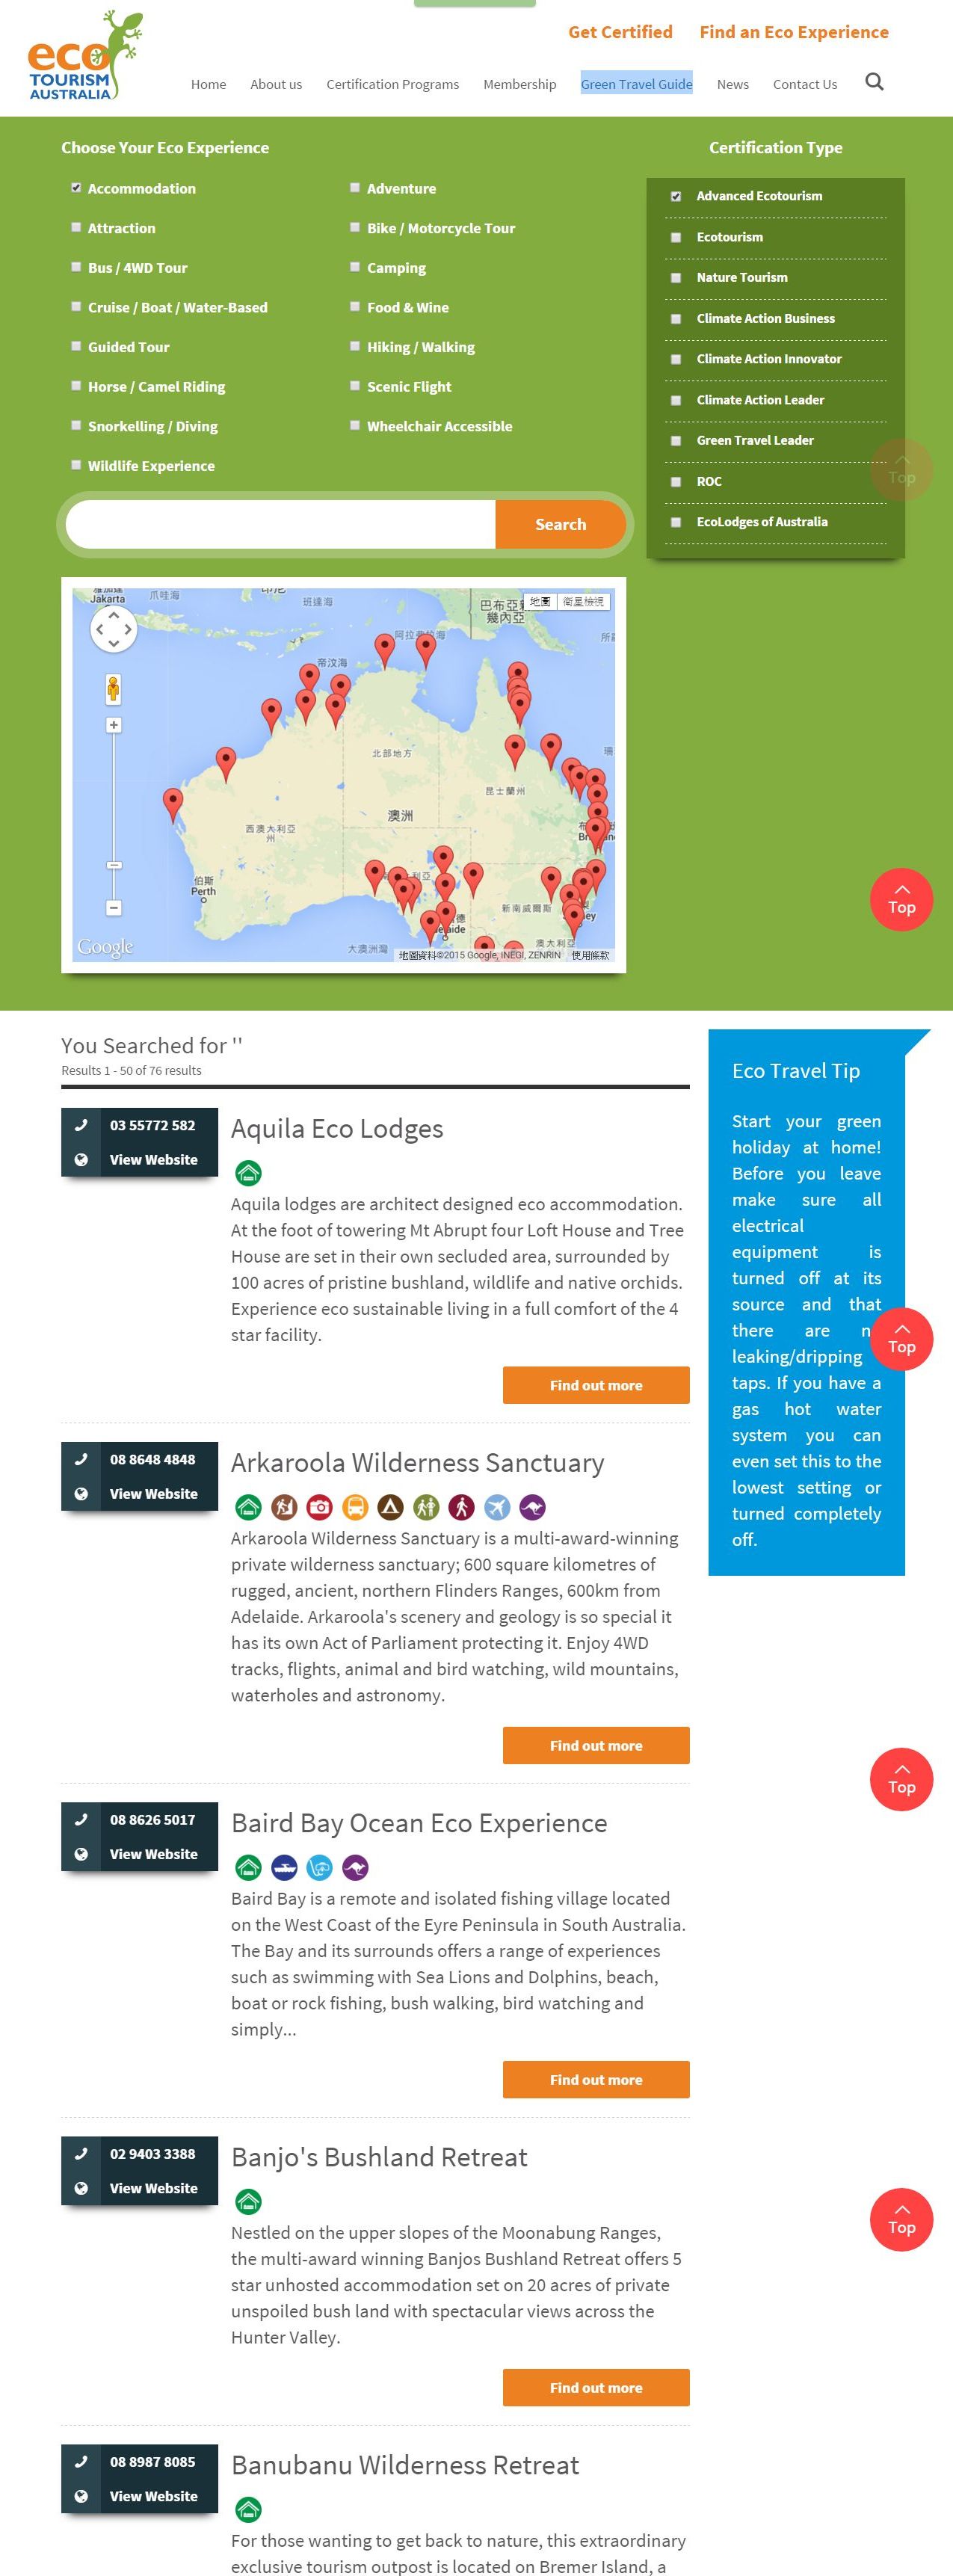 澳洲生態旅遊協會生態標章業者搜尋頁Green Travel Guide-201508-裁切.jpg - 日誌用相簿